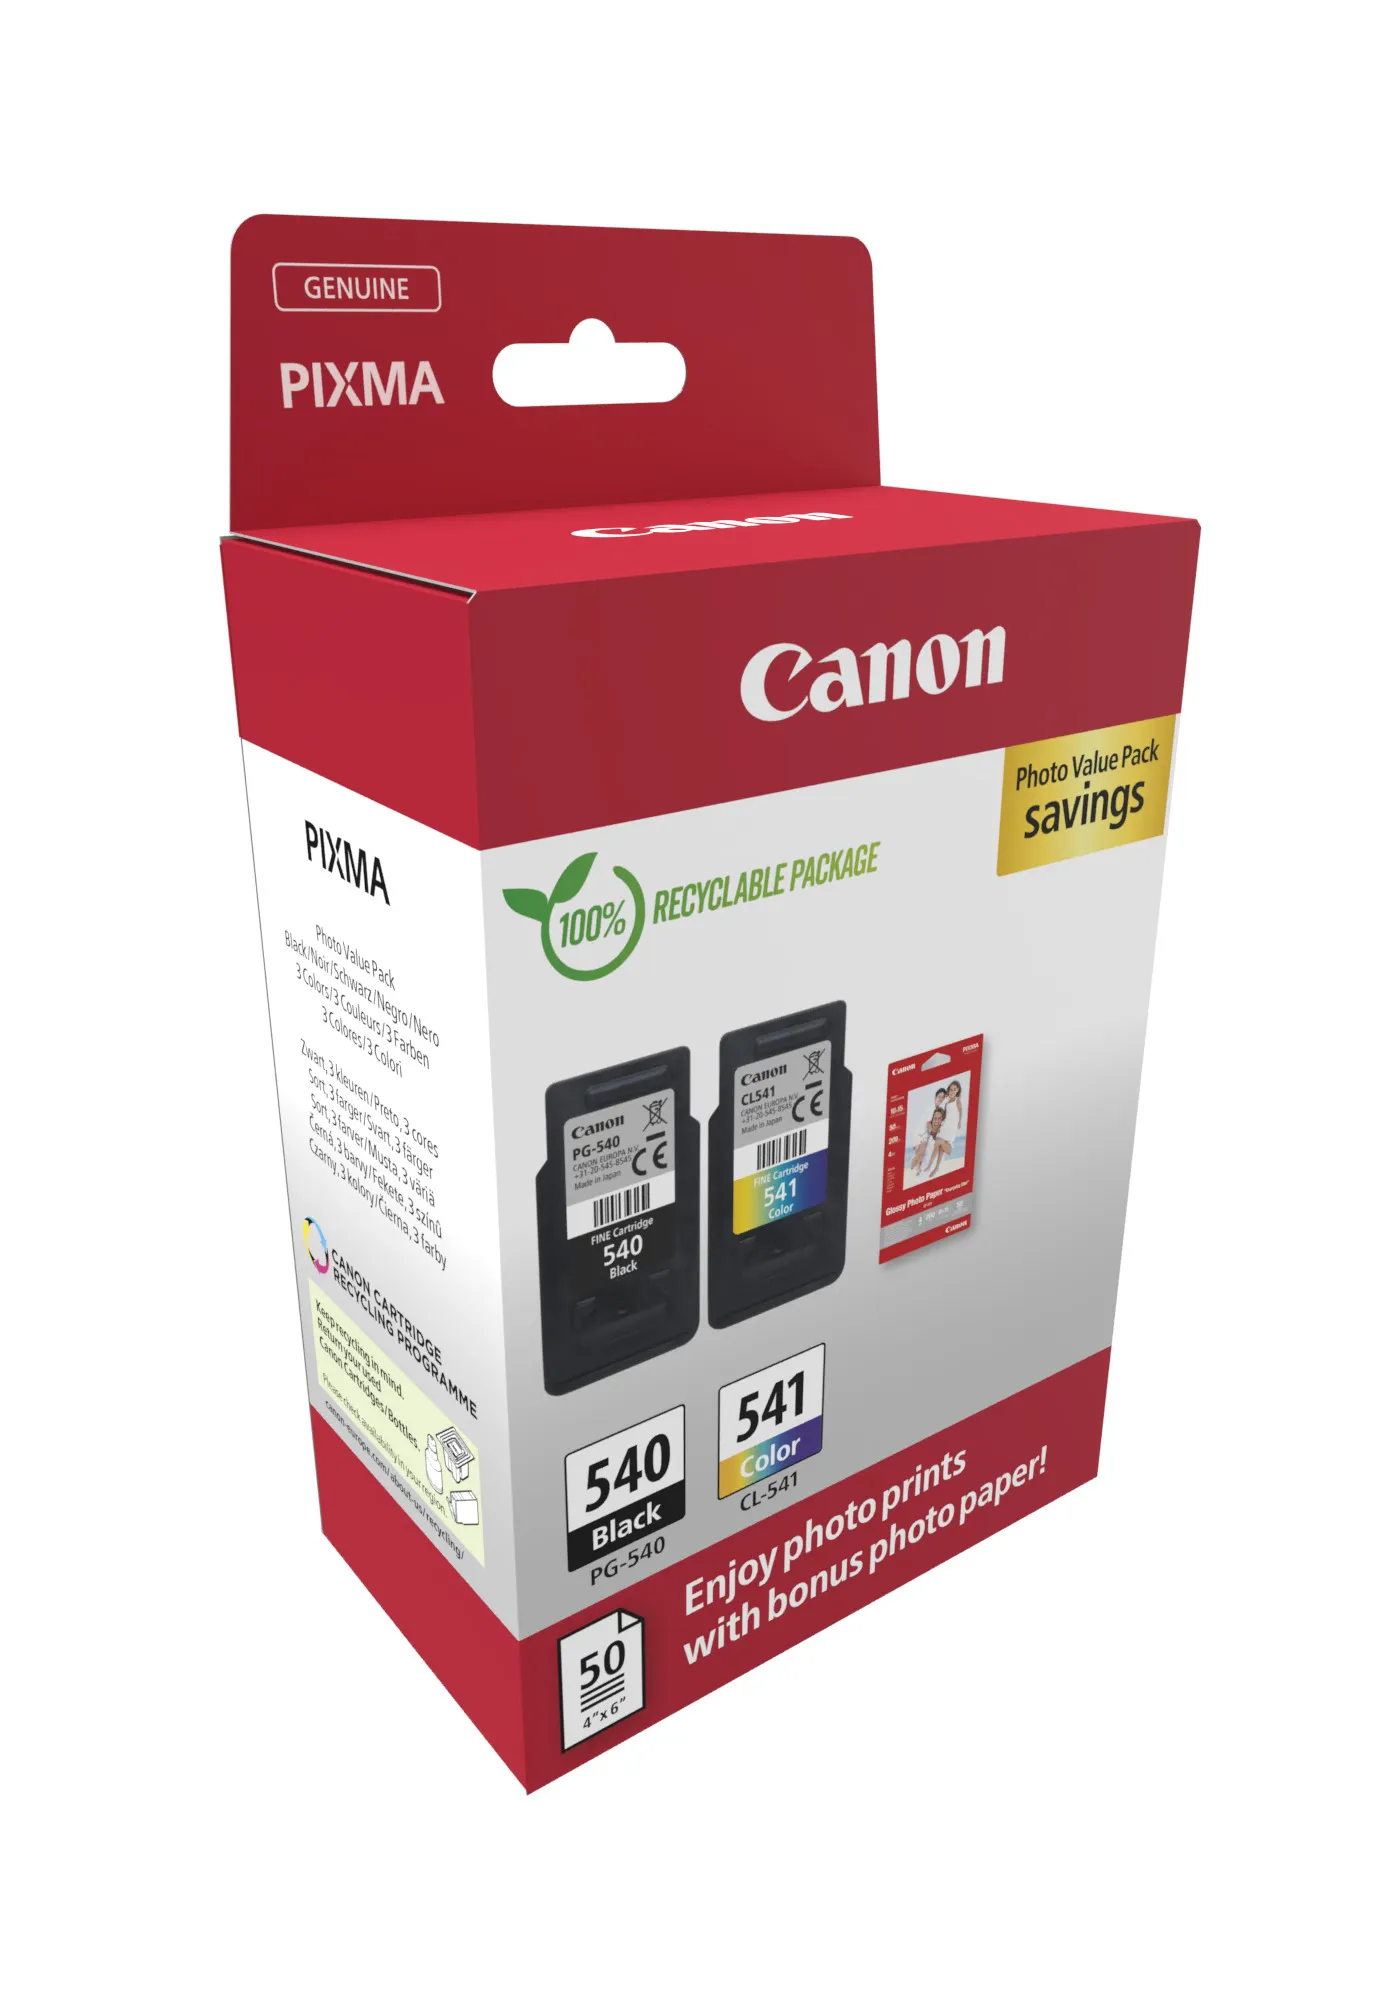 Vente CANON PG-540/CL-541 Ink Cartridge PVP Canon au meilleur prix - visuel 2